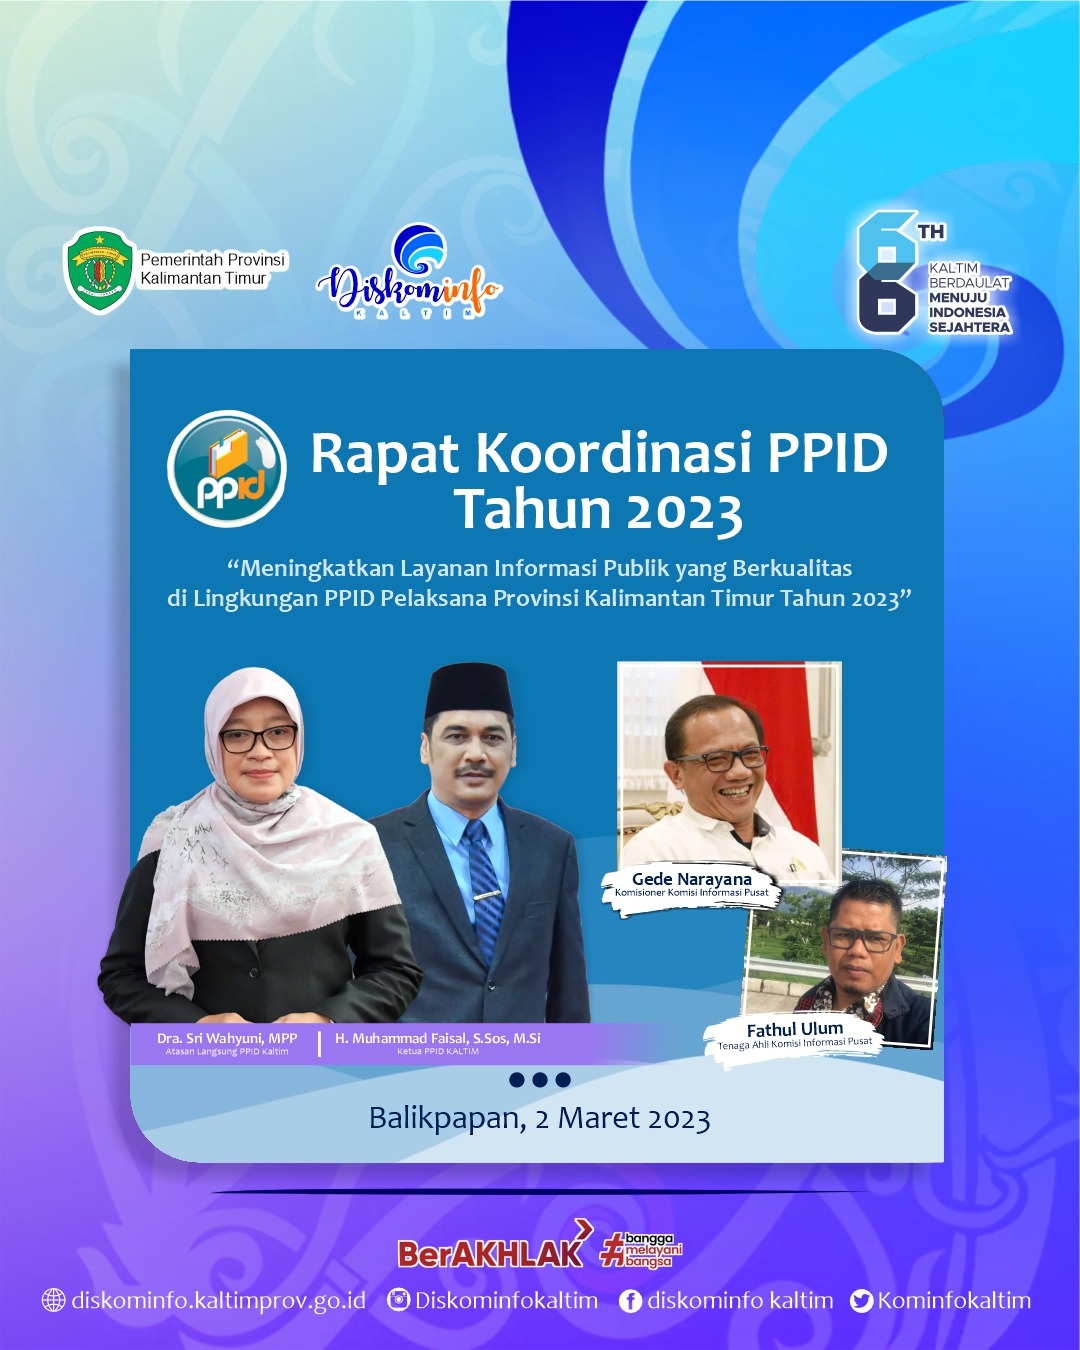 “Meningkatkan Layanan Informasi Publik yang Berkualitas di Lingkungan PPID Pelaksana Provinsi Kalimantan Timur"